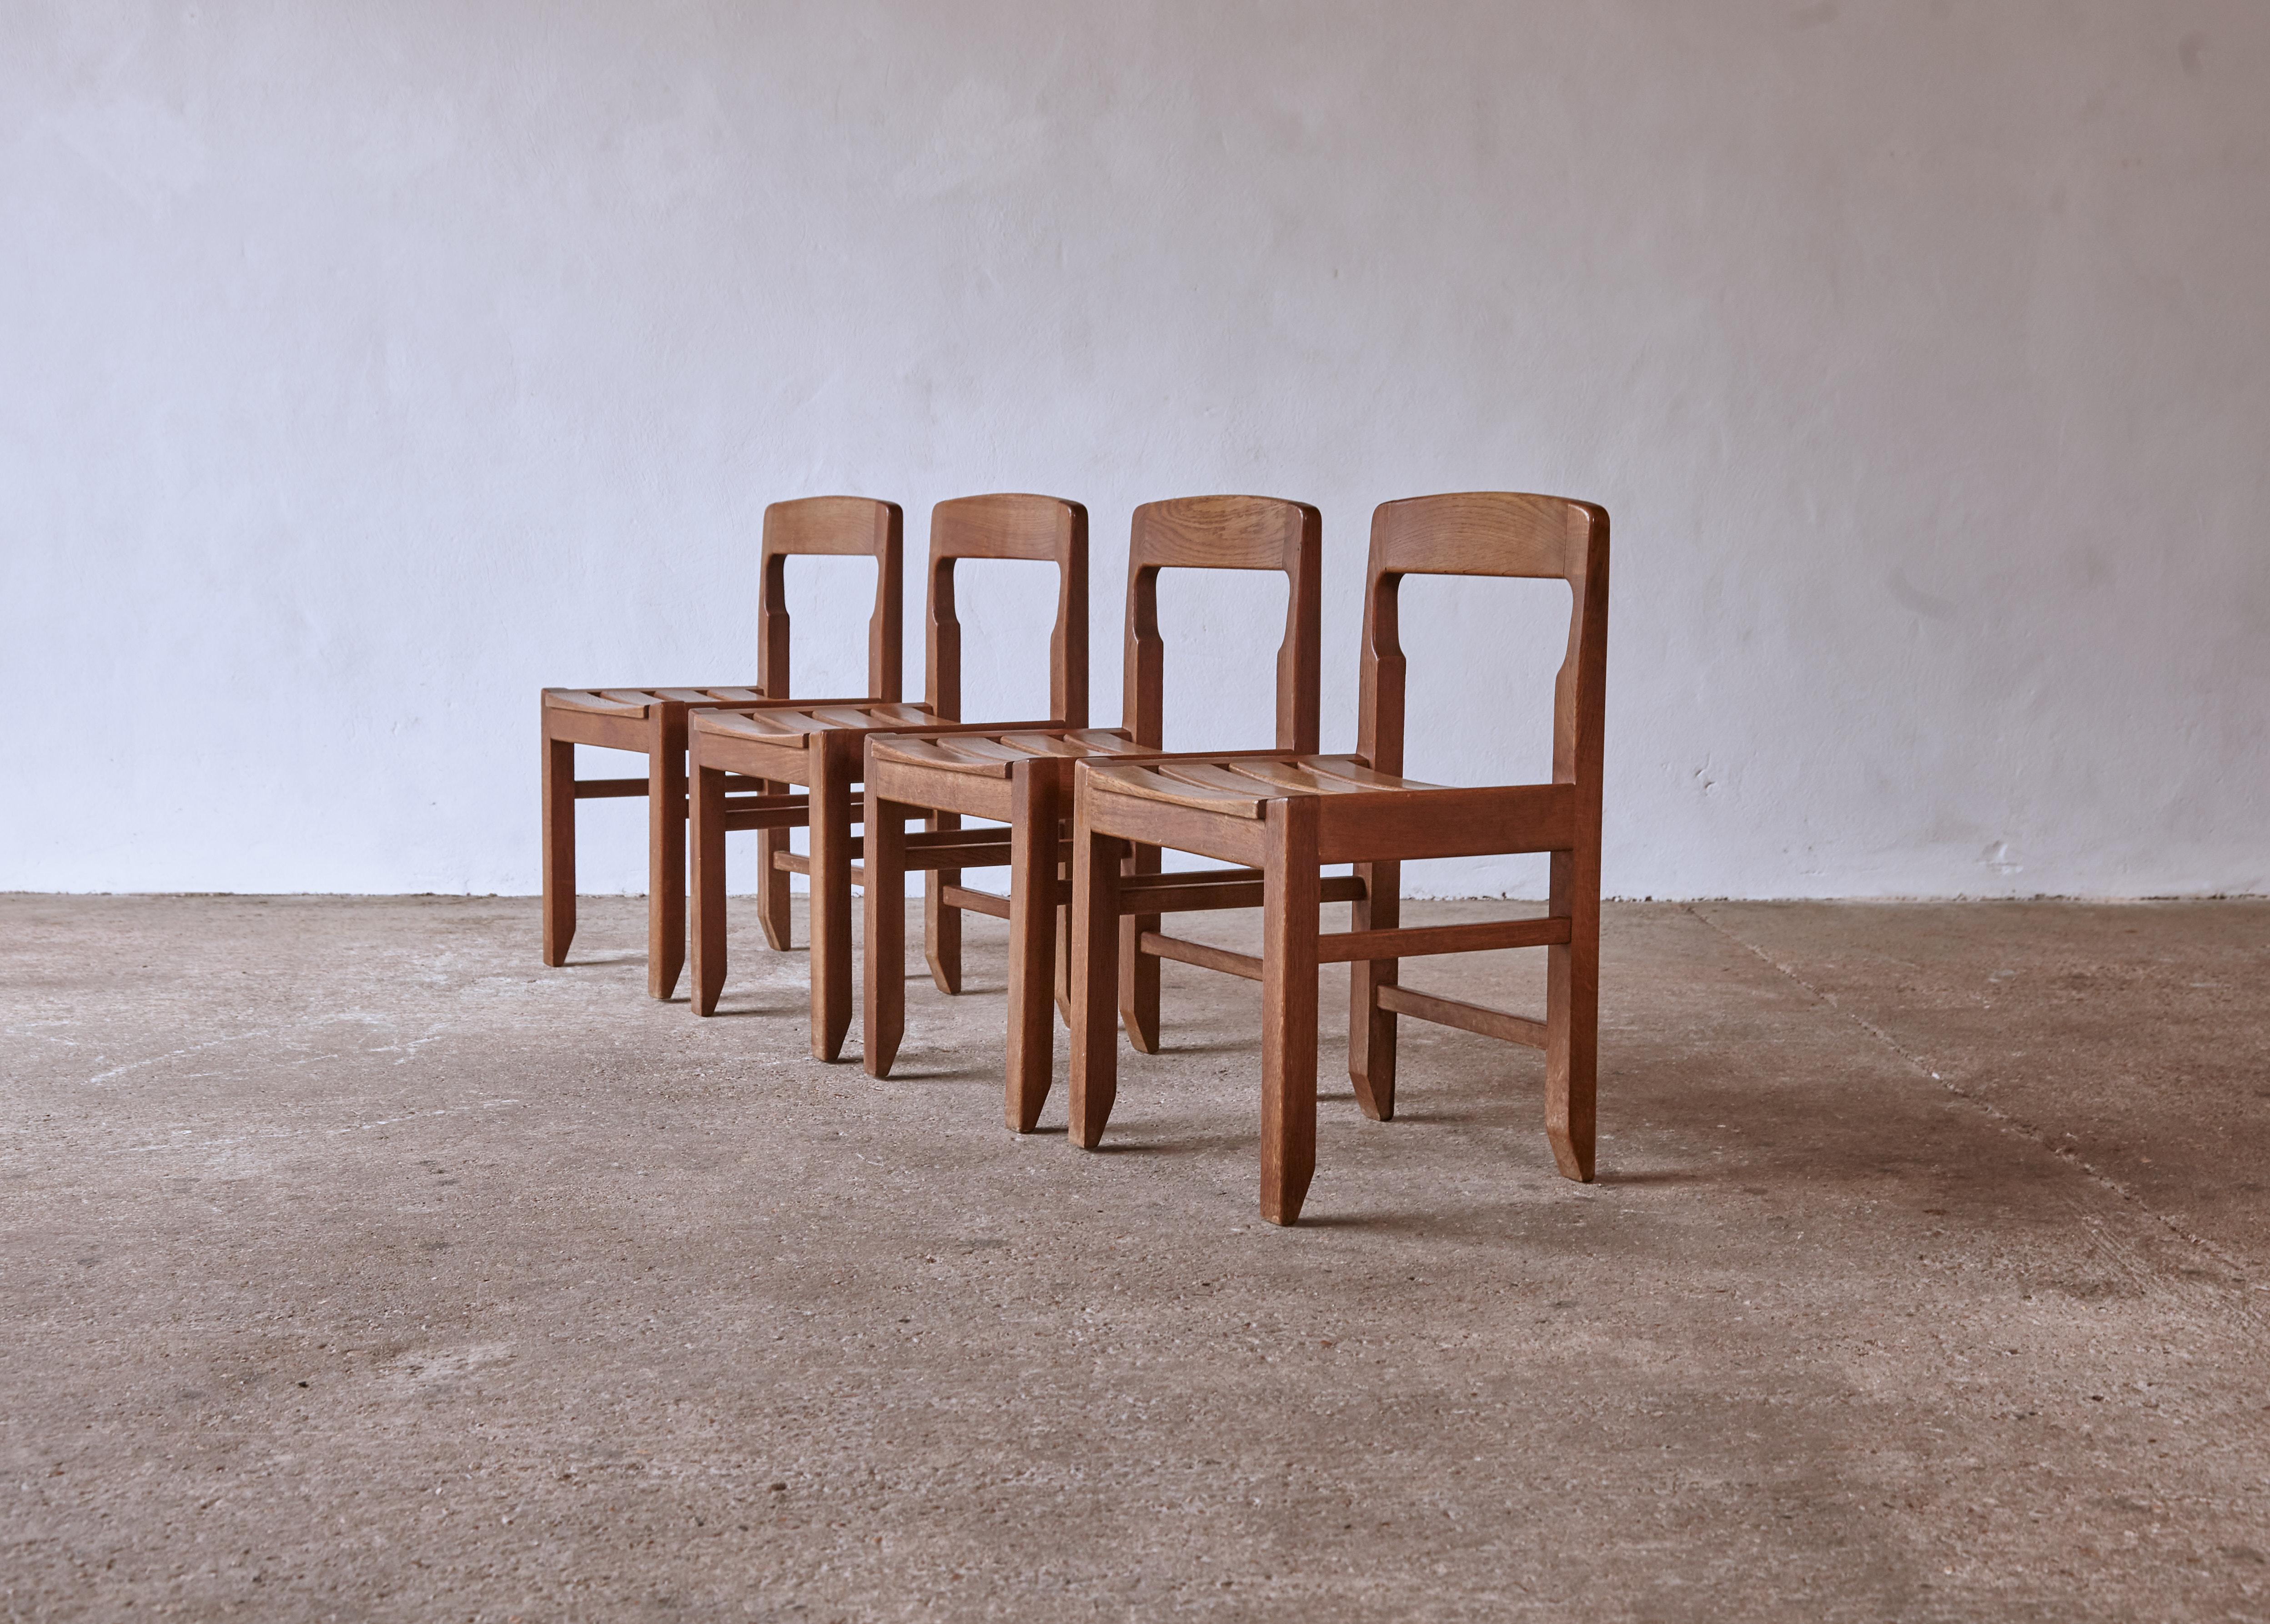 Ein Satz von vier prächtigen Guillerme et Chambron Esszimmerstühlen aus massiver Eiche, hergestellt in Frankreich in den 1960er Jahren. Strukturell in gutem Zustand mit einem schönen gleichmäßigen Gesamtton und Patina. Sehr schöne Beispiele für